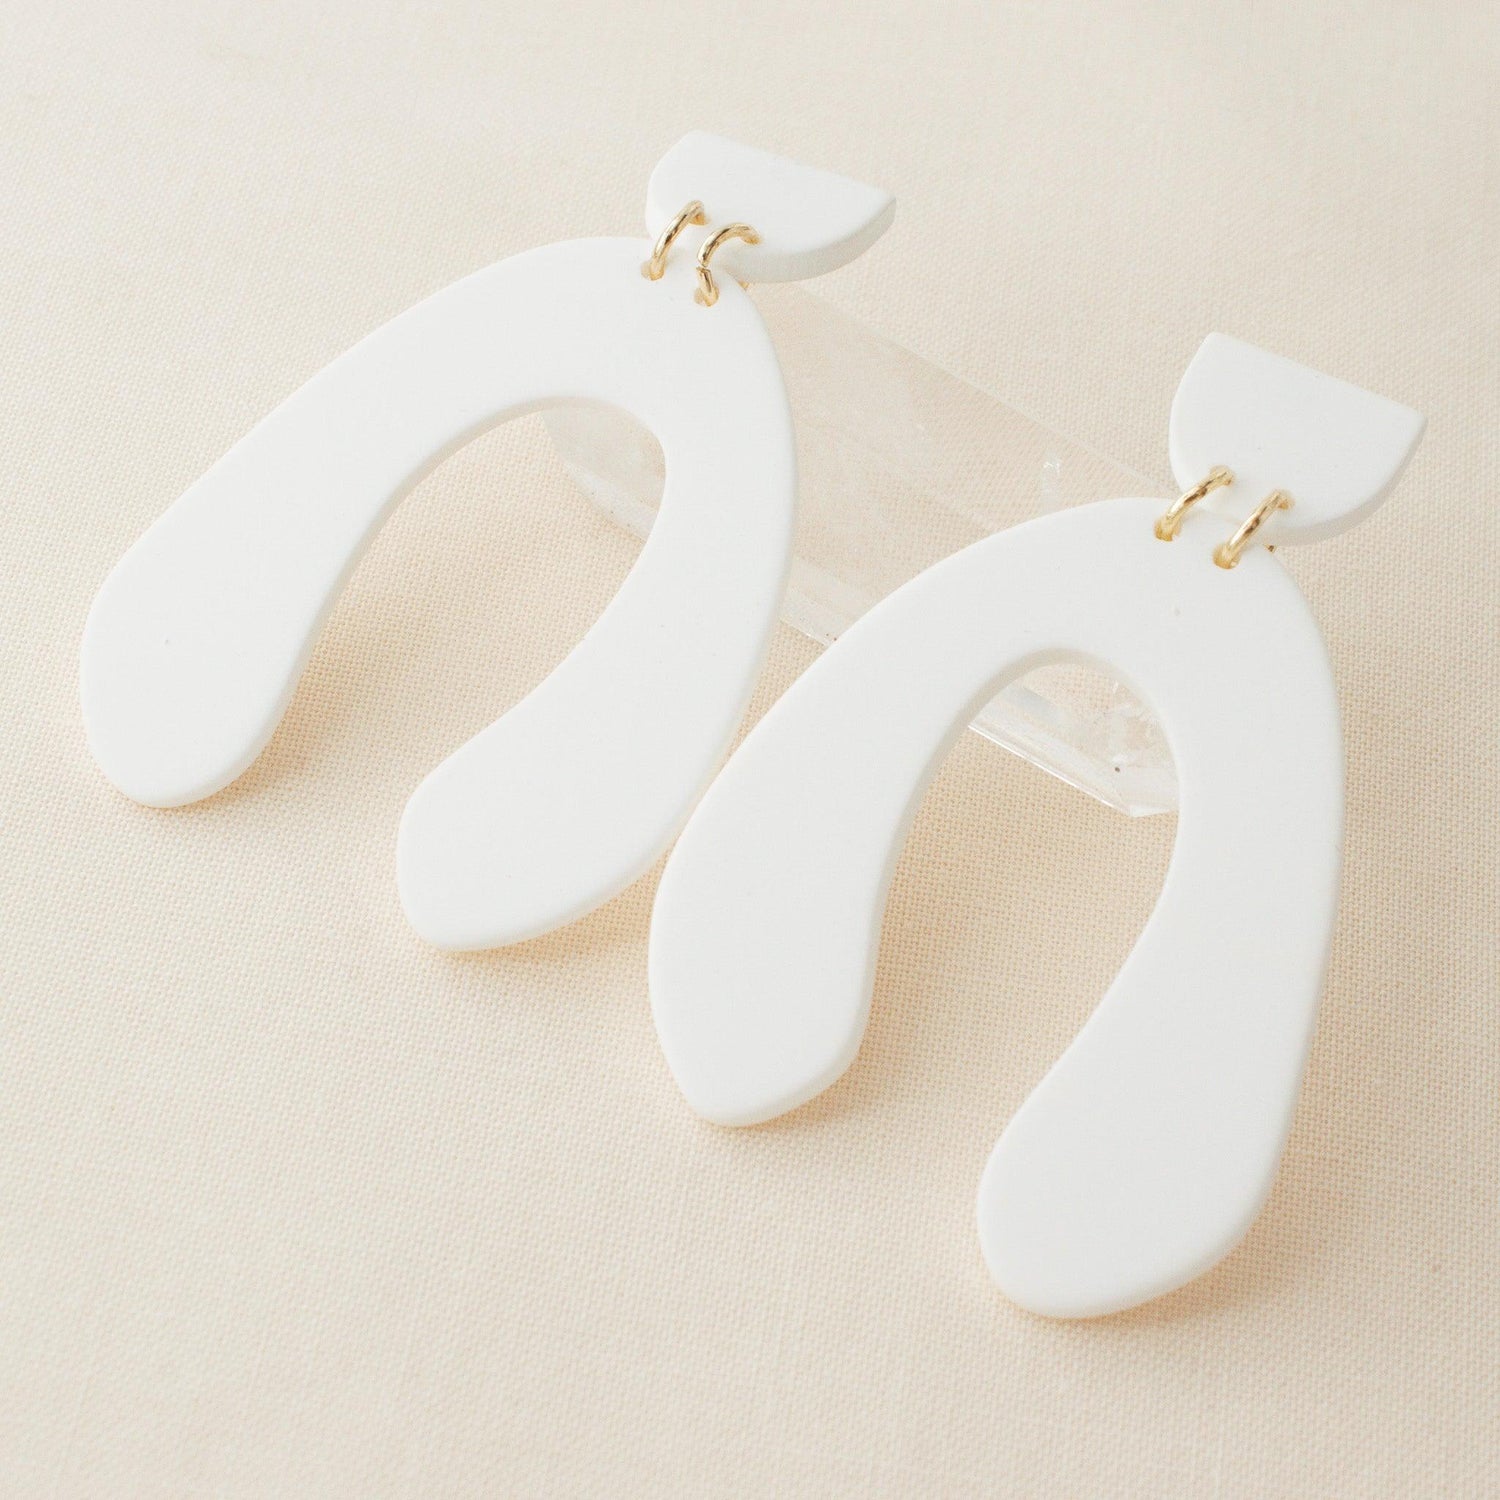 Chic Polymer Clay White Hoop Earrings - avantejewel.com